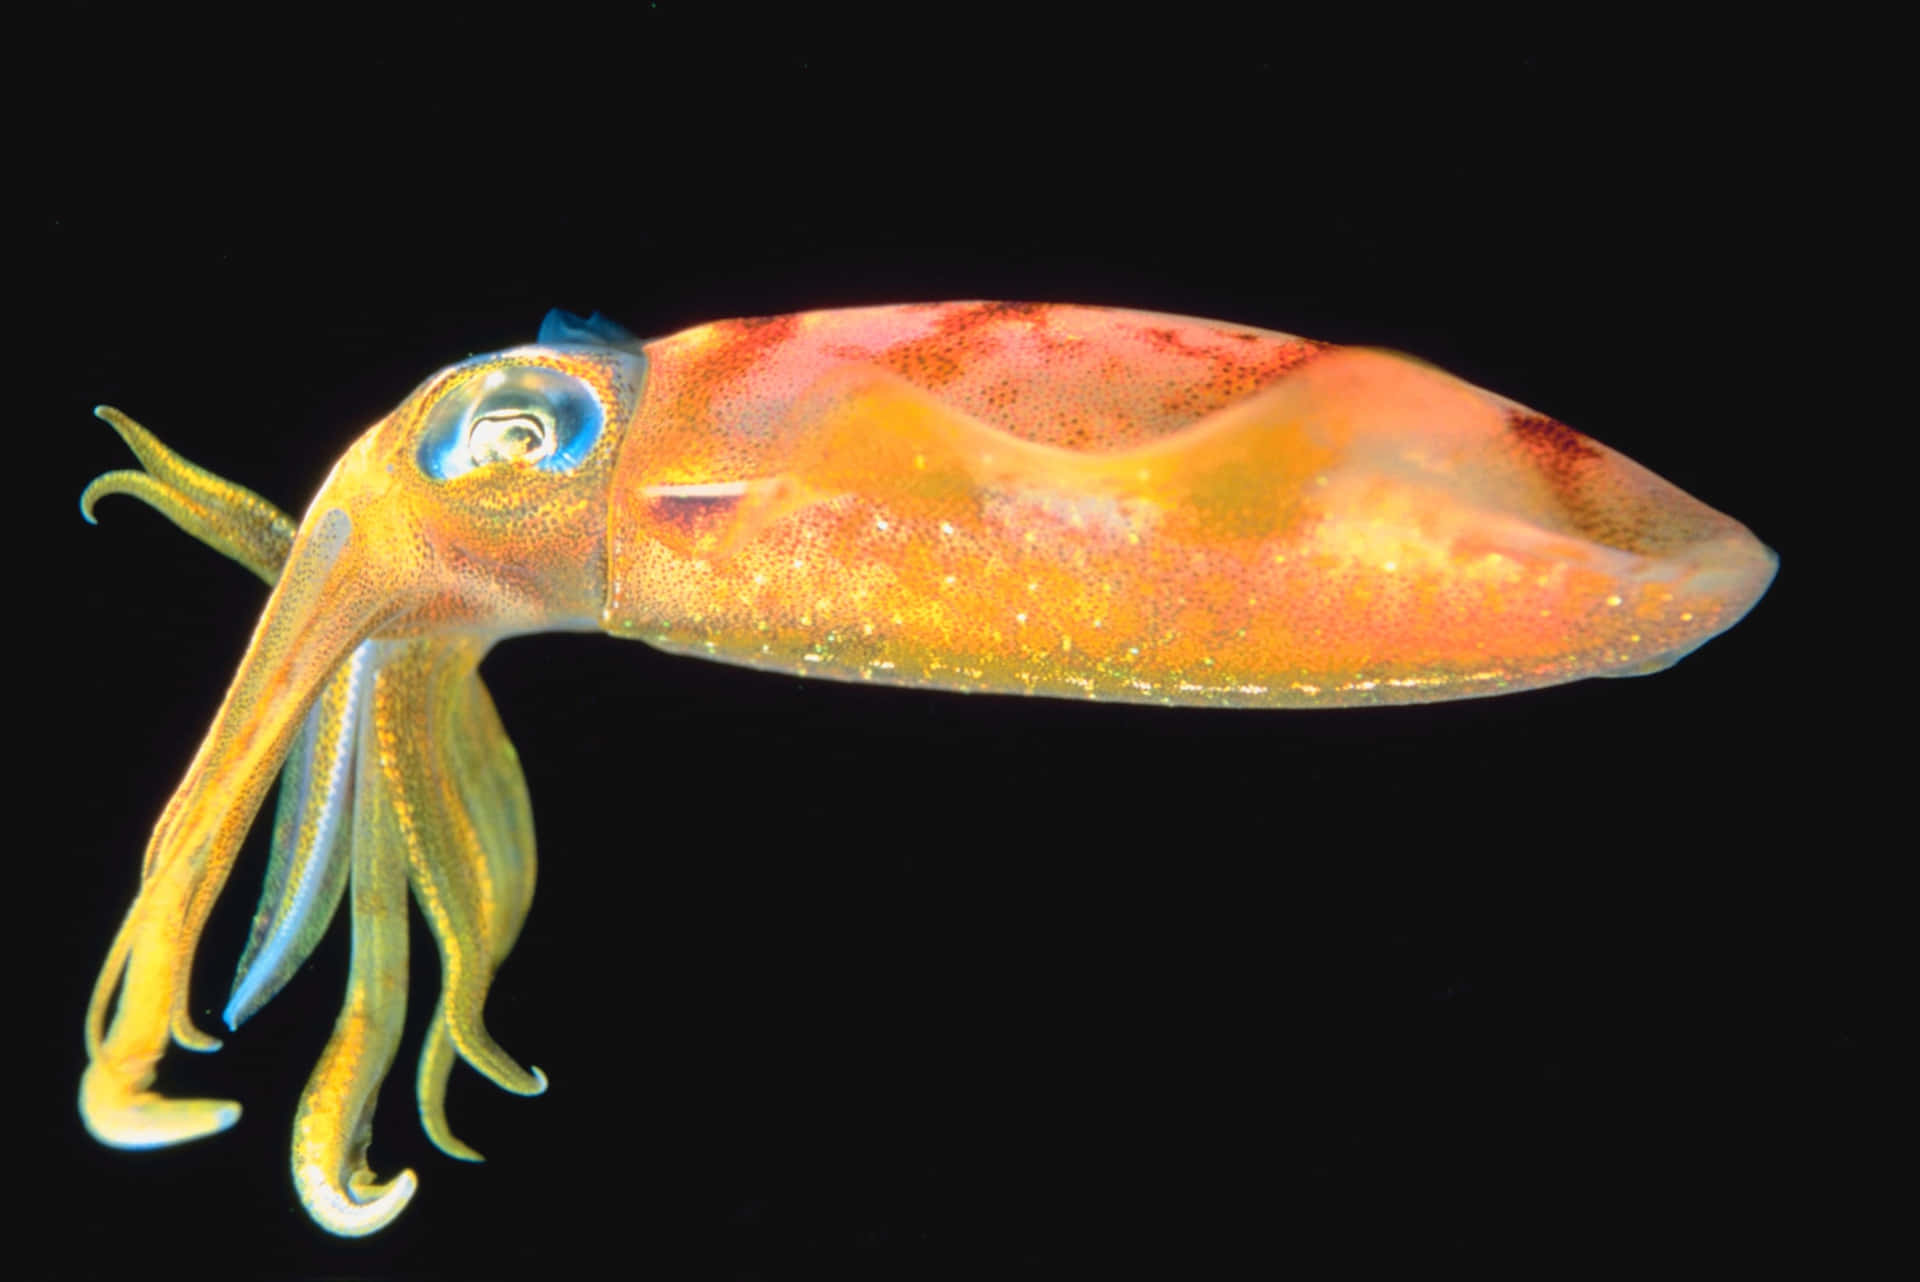 Staringeye Of A Squid: Stirrande Öga Av En Bläckfisk